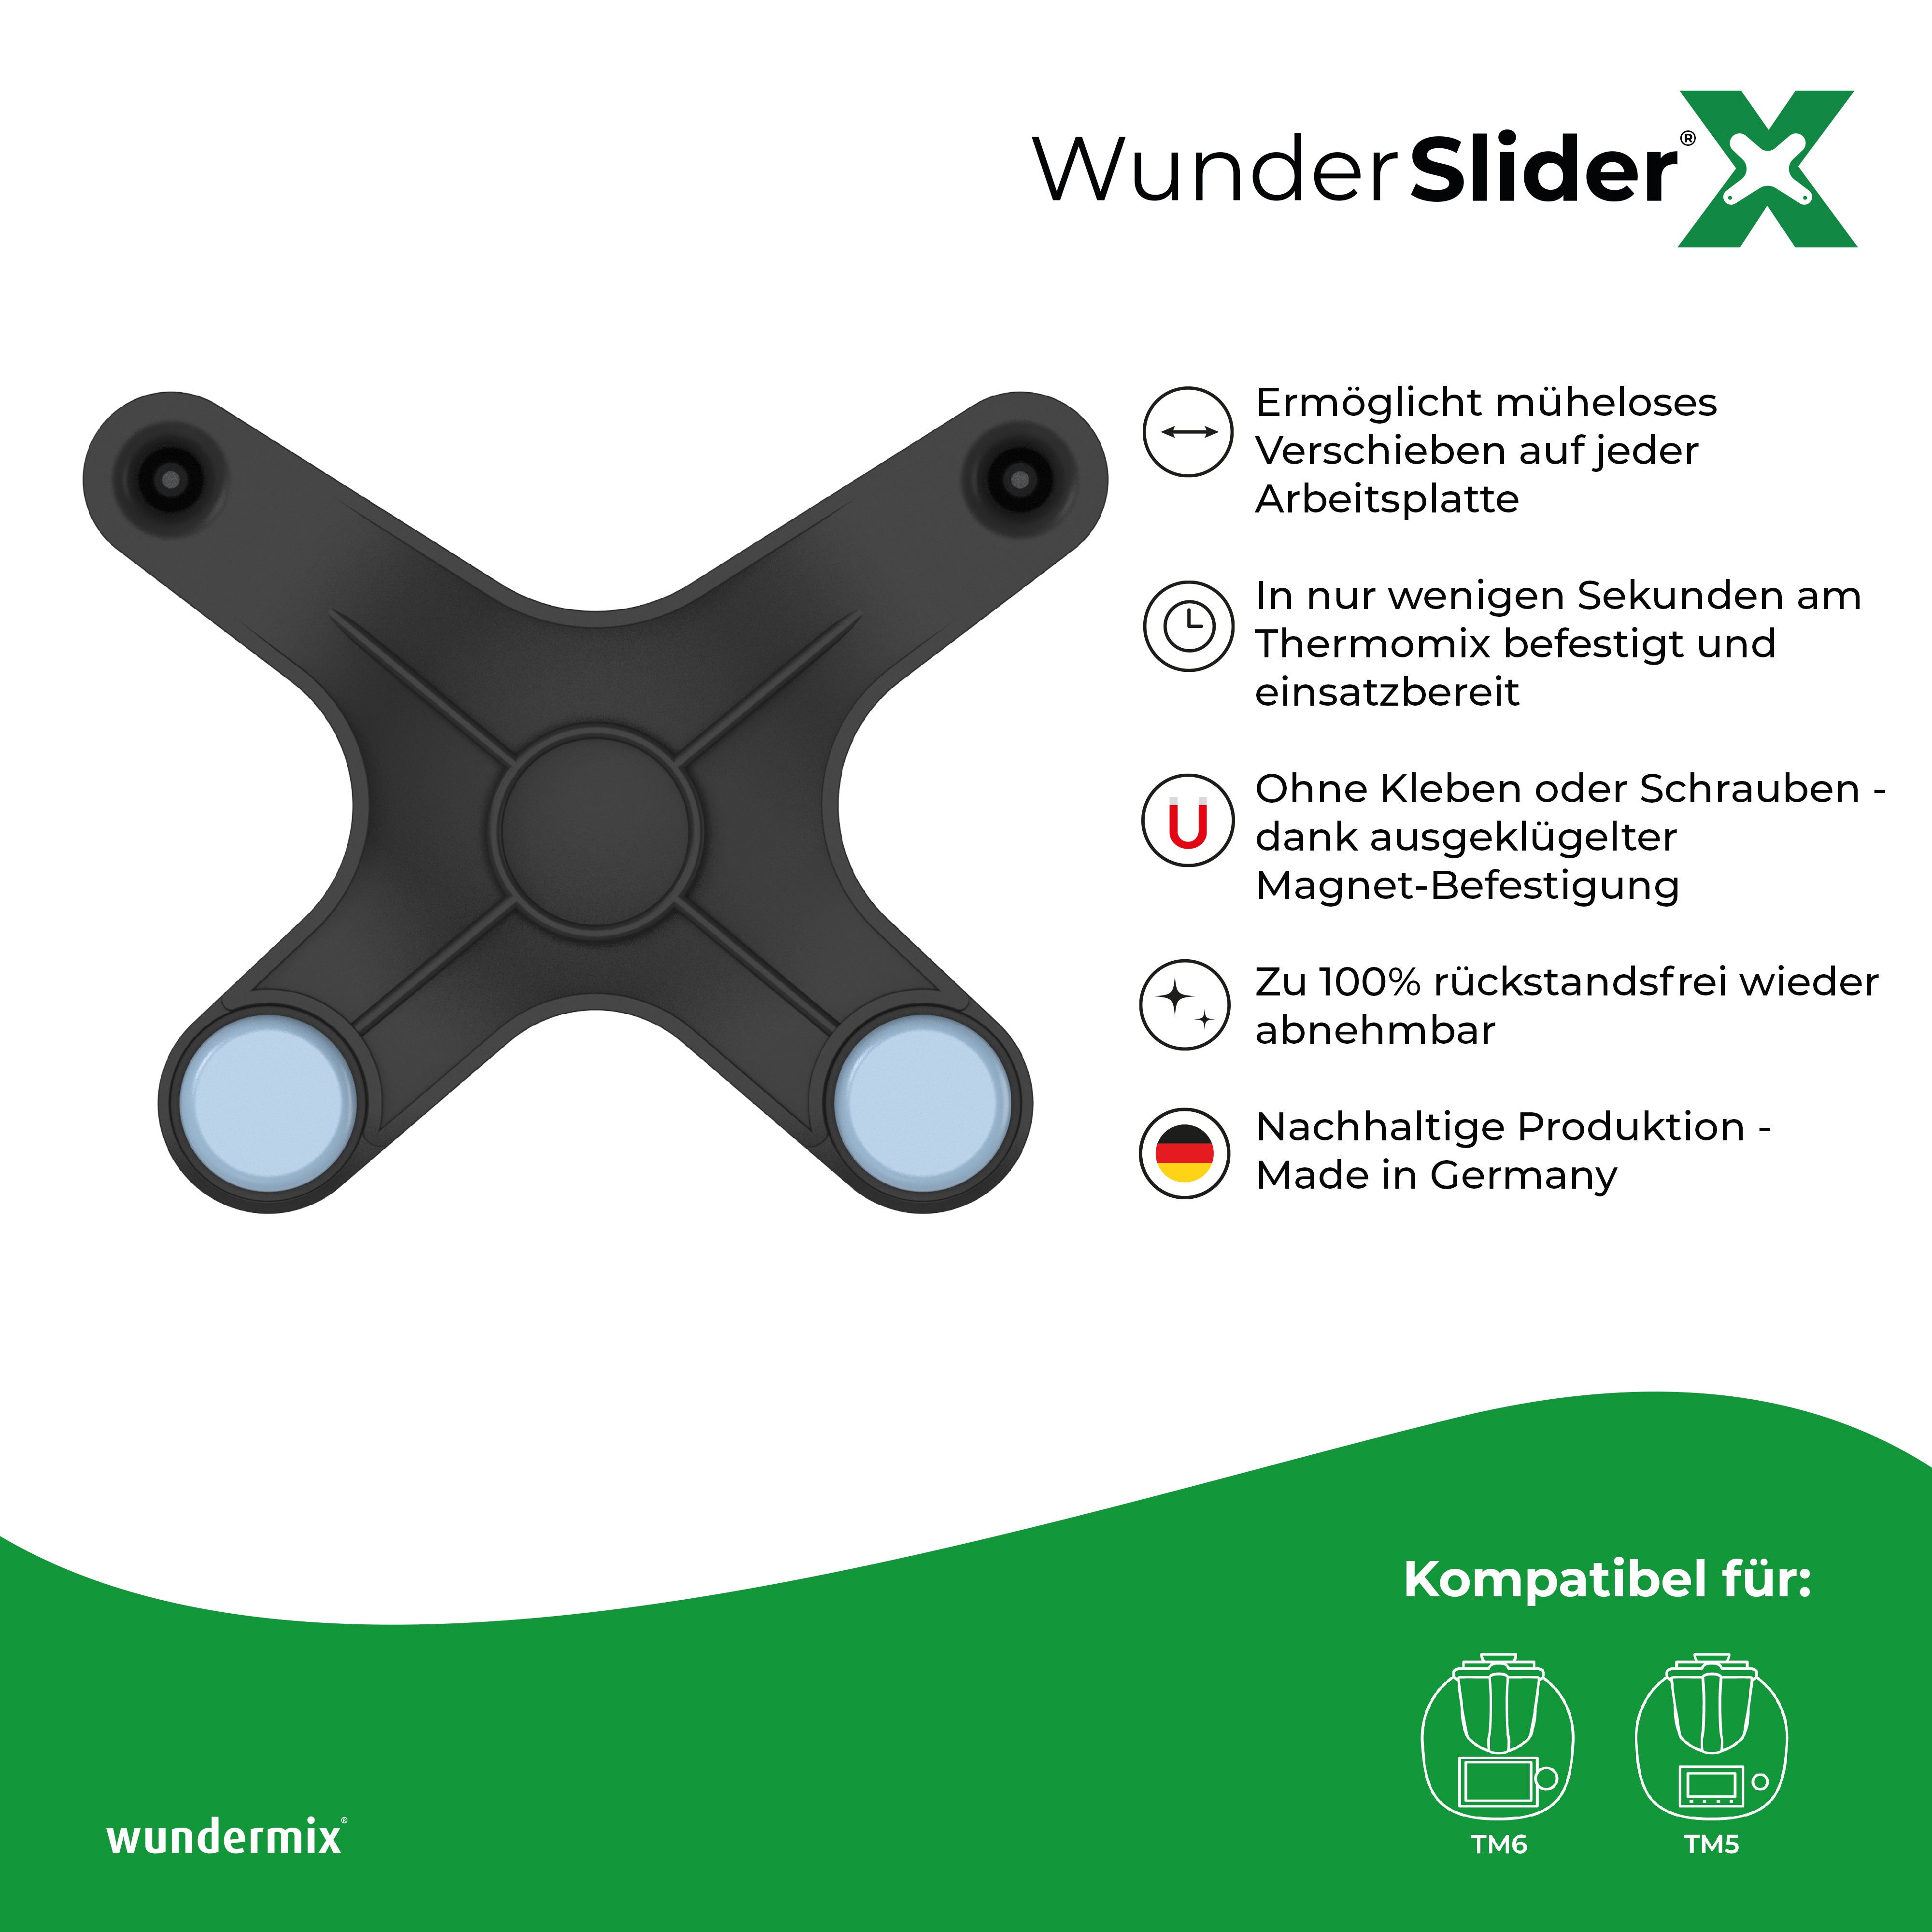 WunderSlider® X | Die neue Gleitbrett-Alternative für Thermomix TM6, TM5